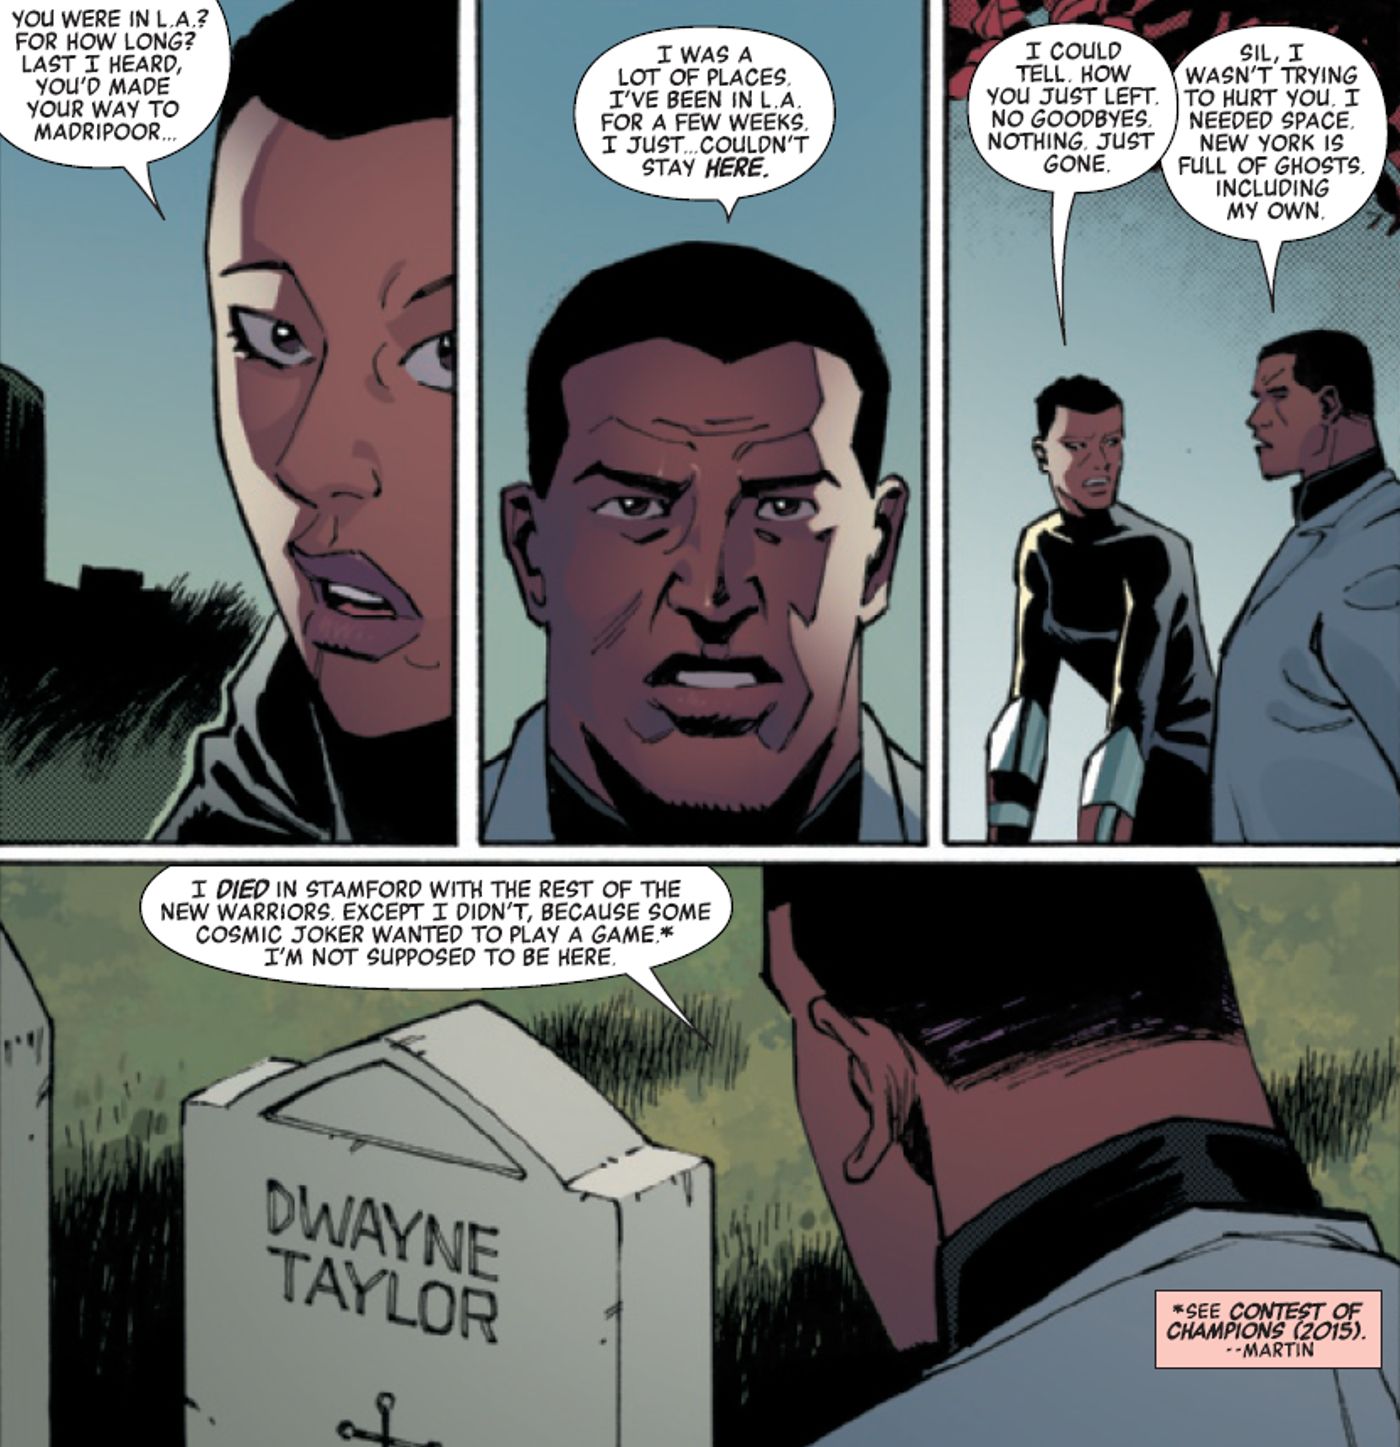 Dwayne Taylor olhando para seu próprio túmulo e relembrando como ele deveria ter falecido